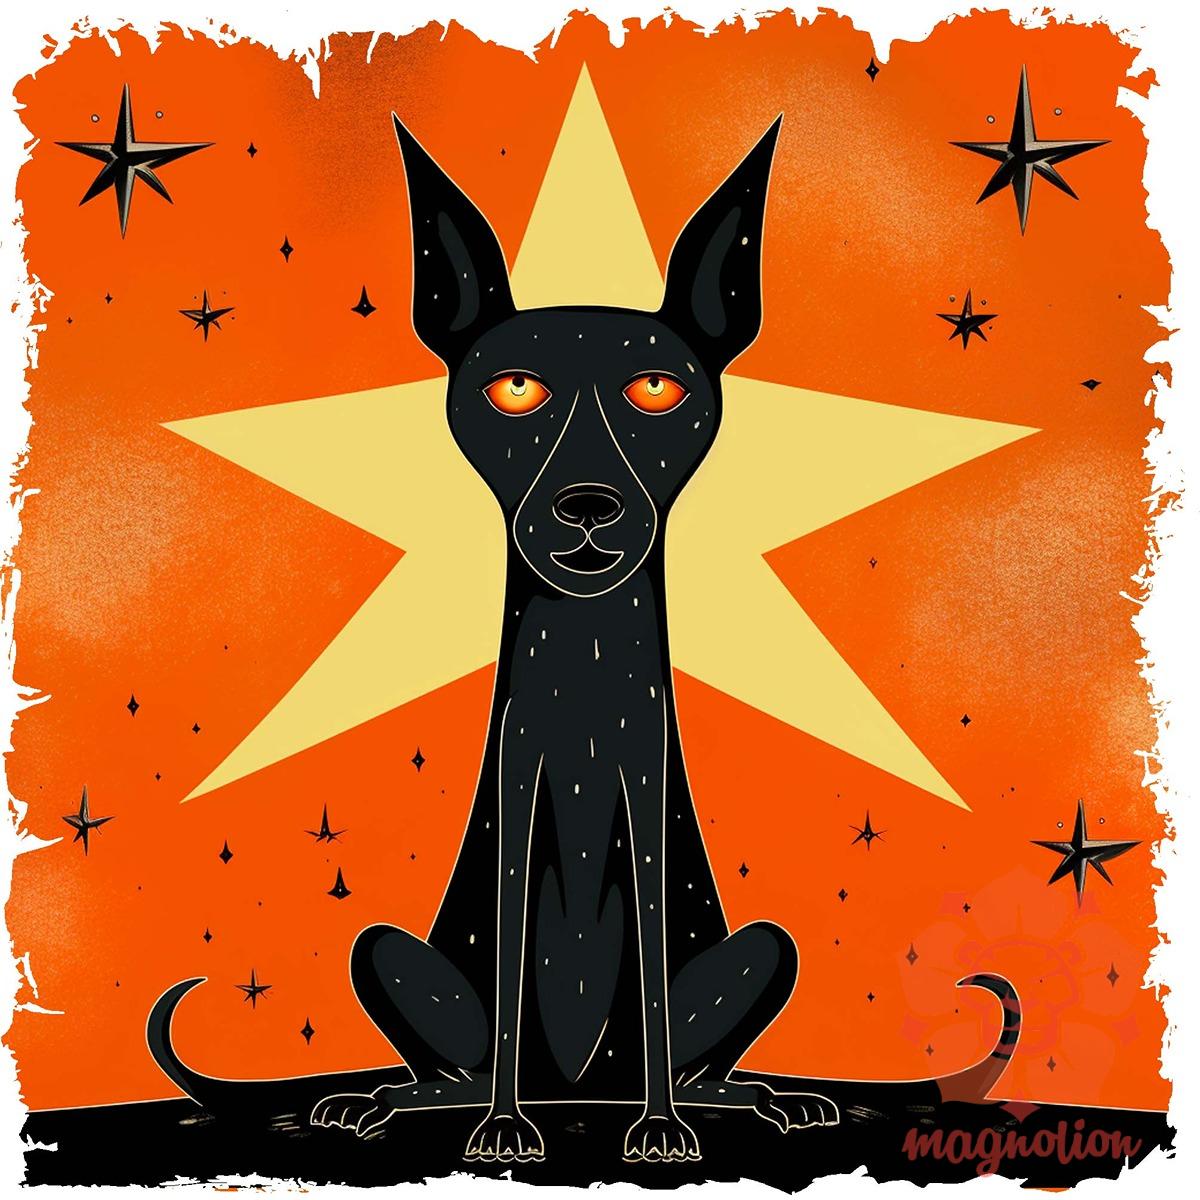 Fekete kutya csillagok között v5